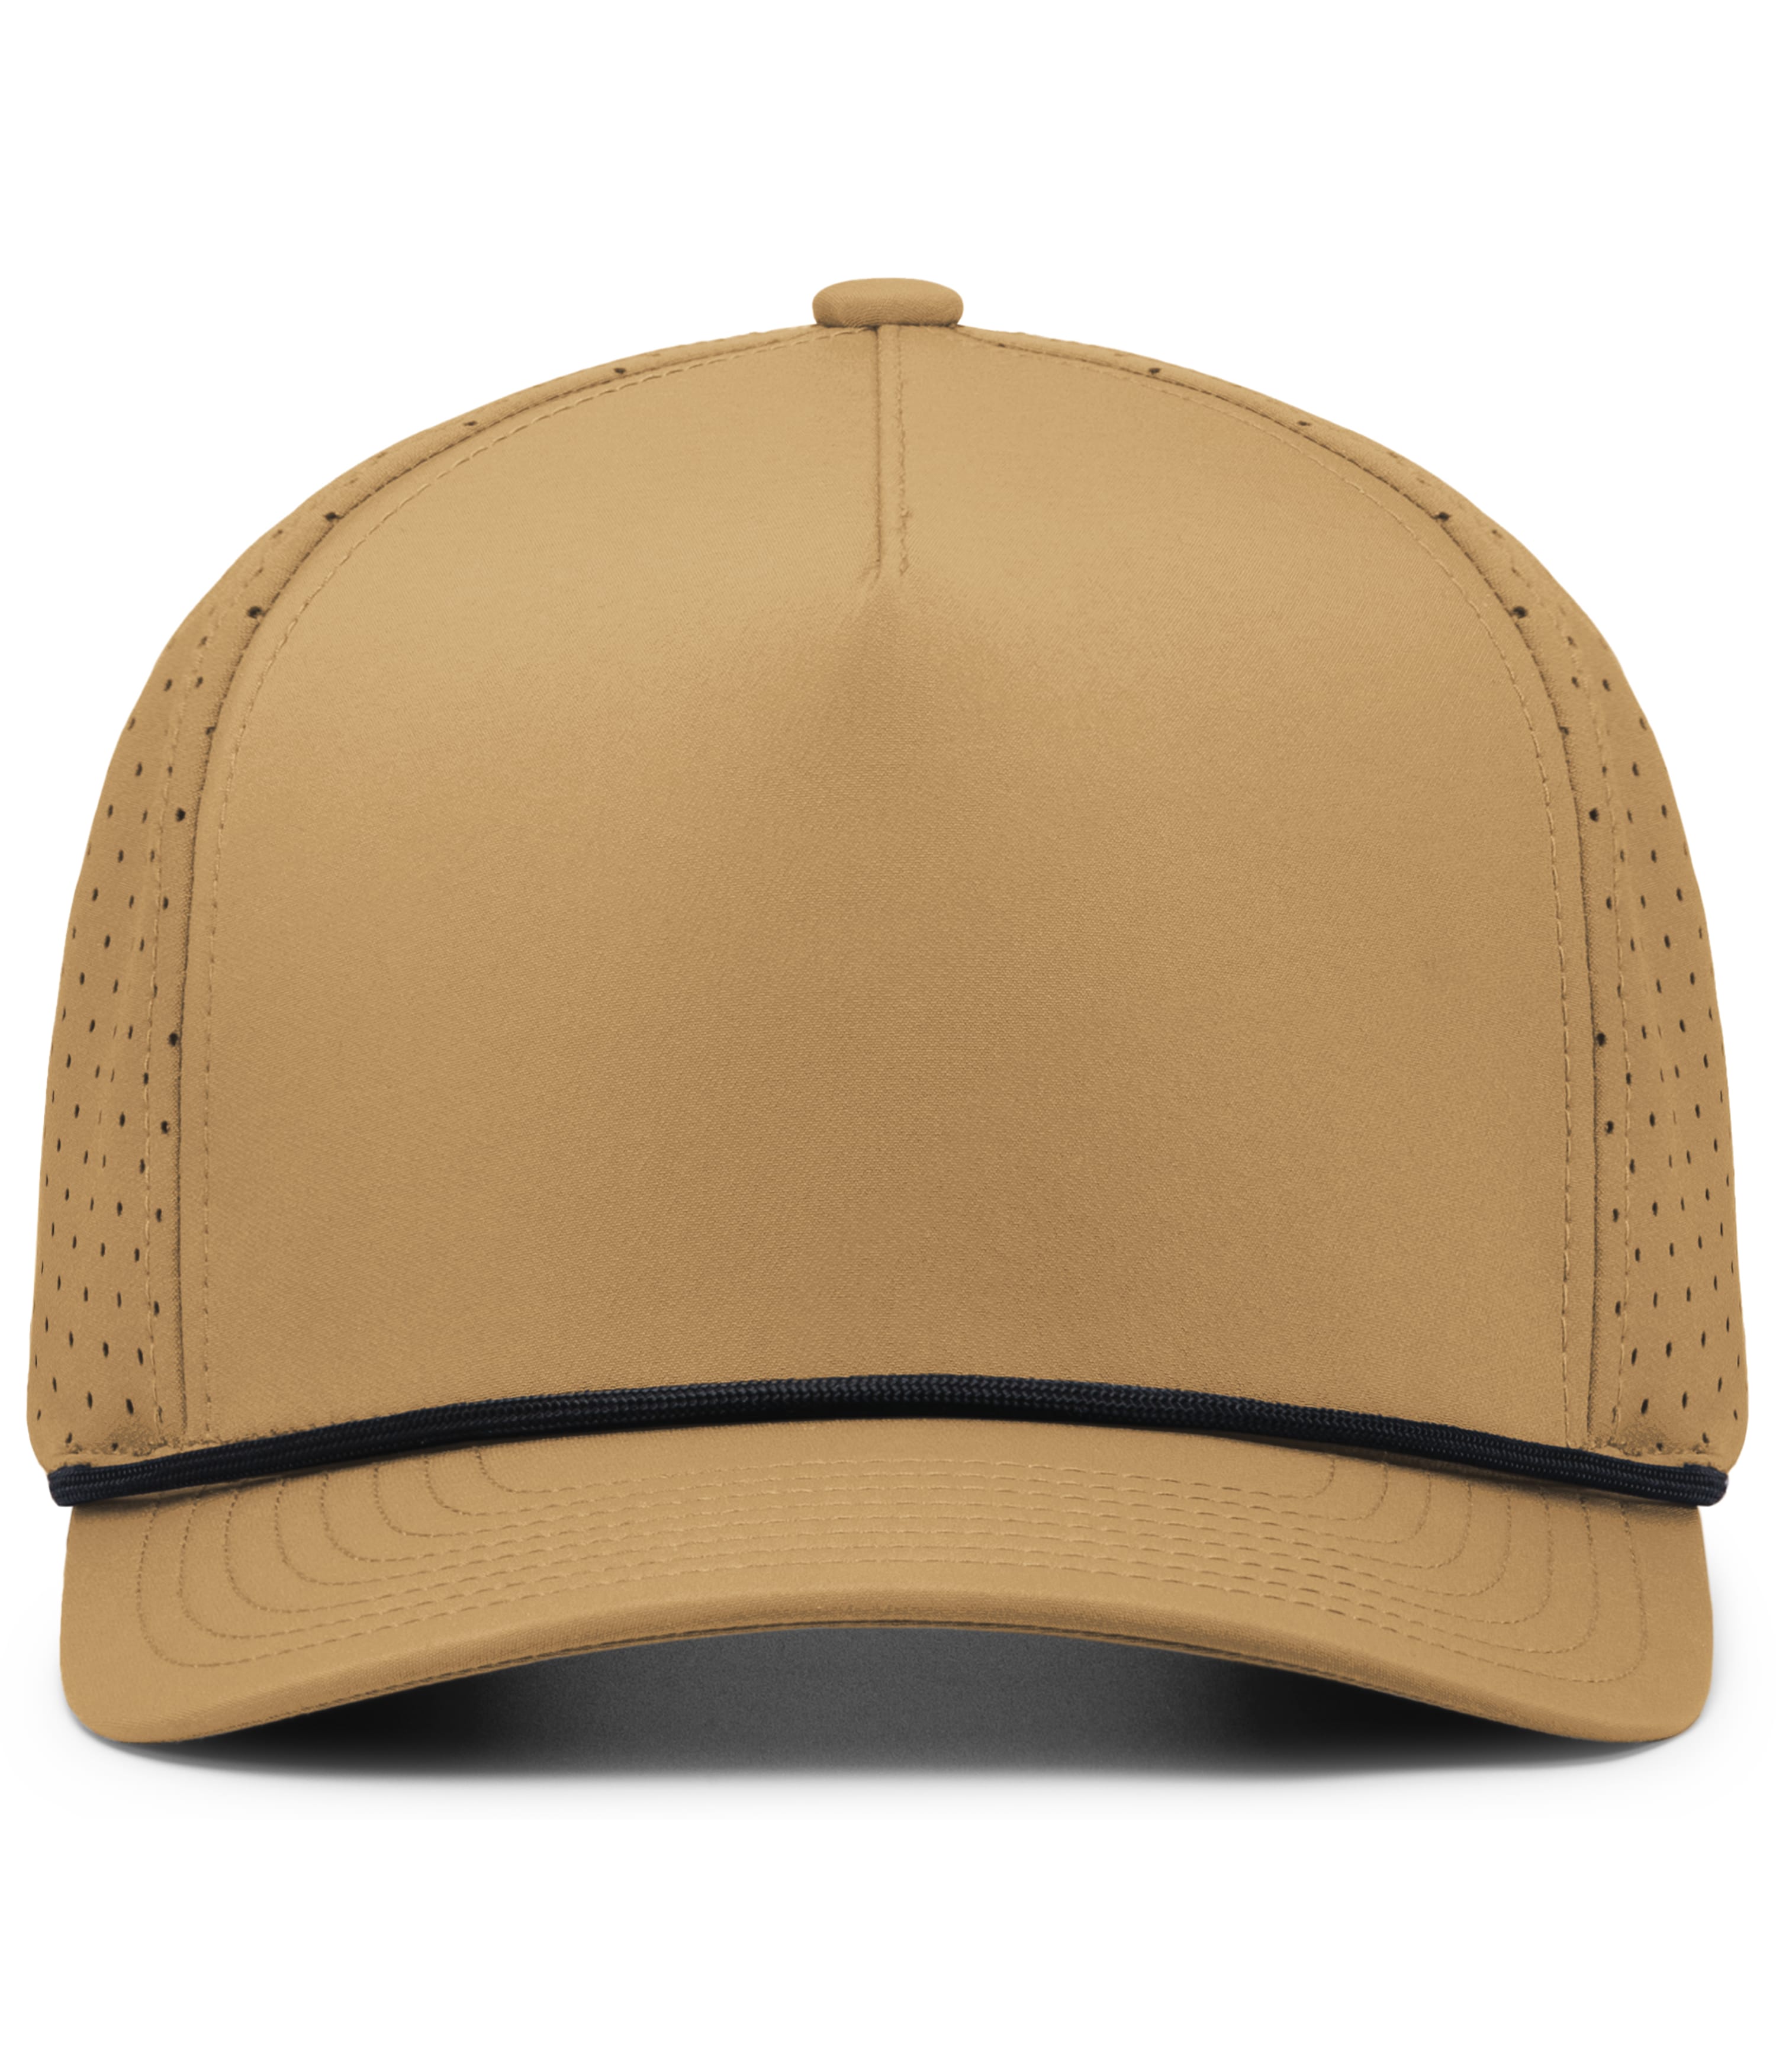 P424 | WEEKENDER PERFORATED SNAPBACK CAP